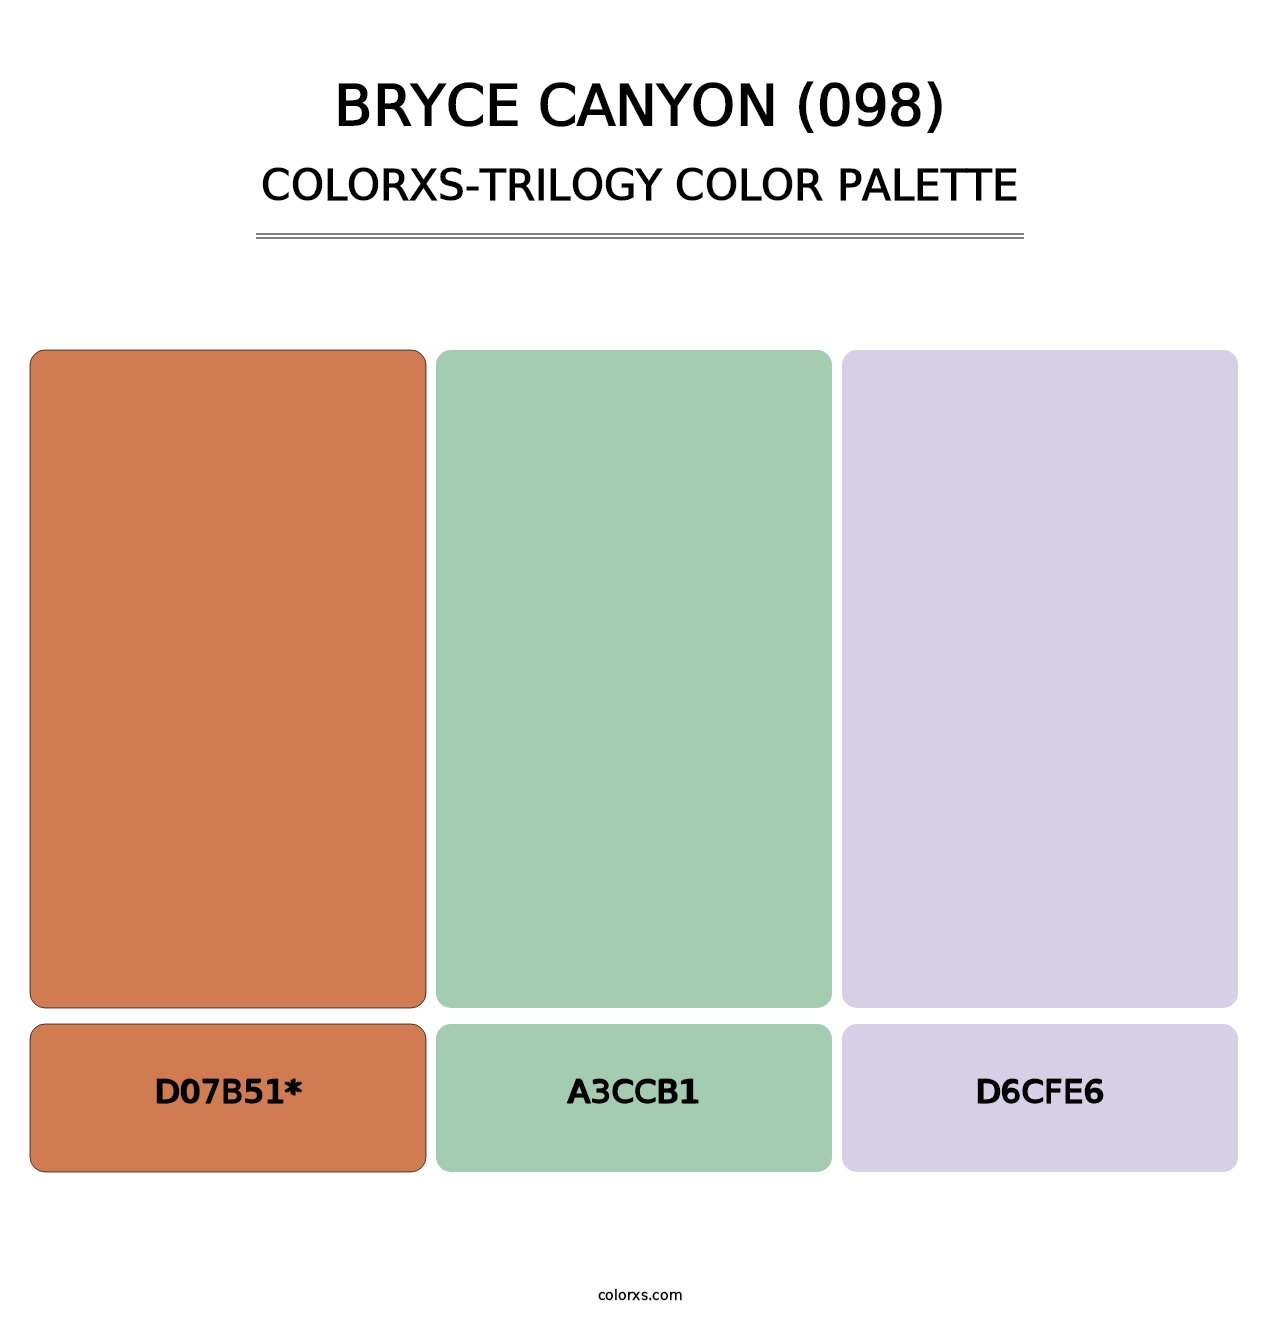 Bryce Canyon (098) - Colorxs Trilogy Palette